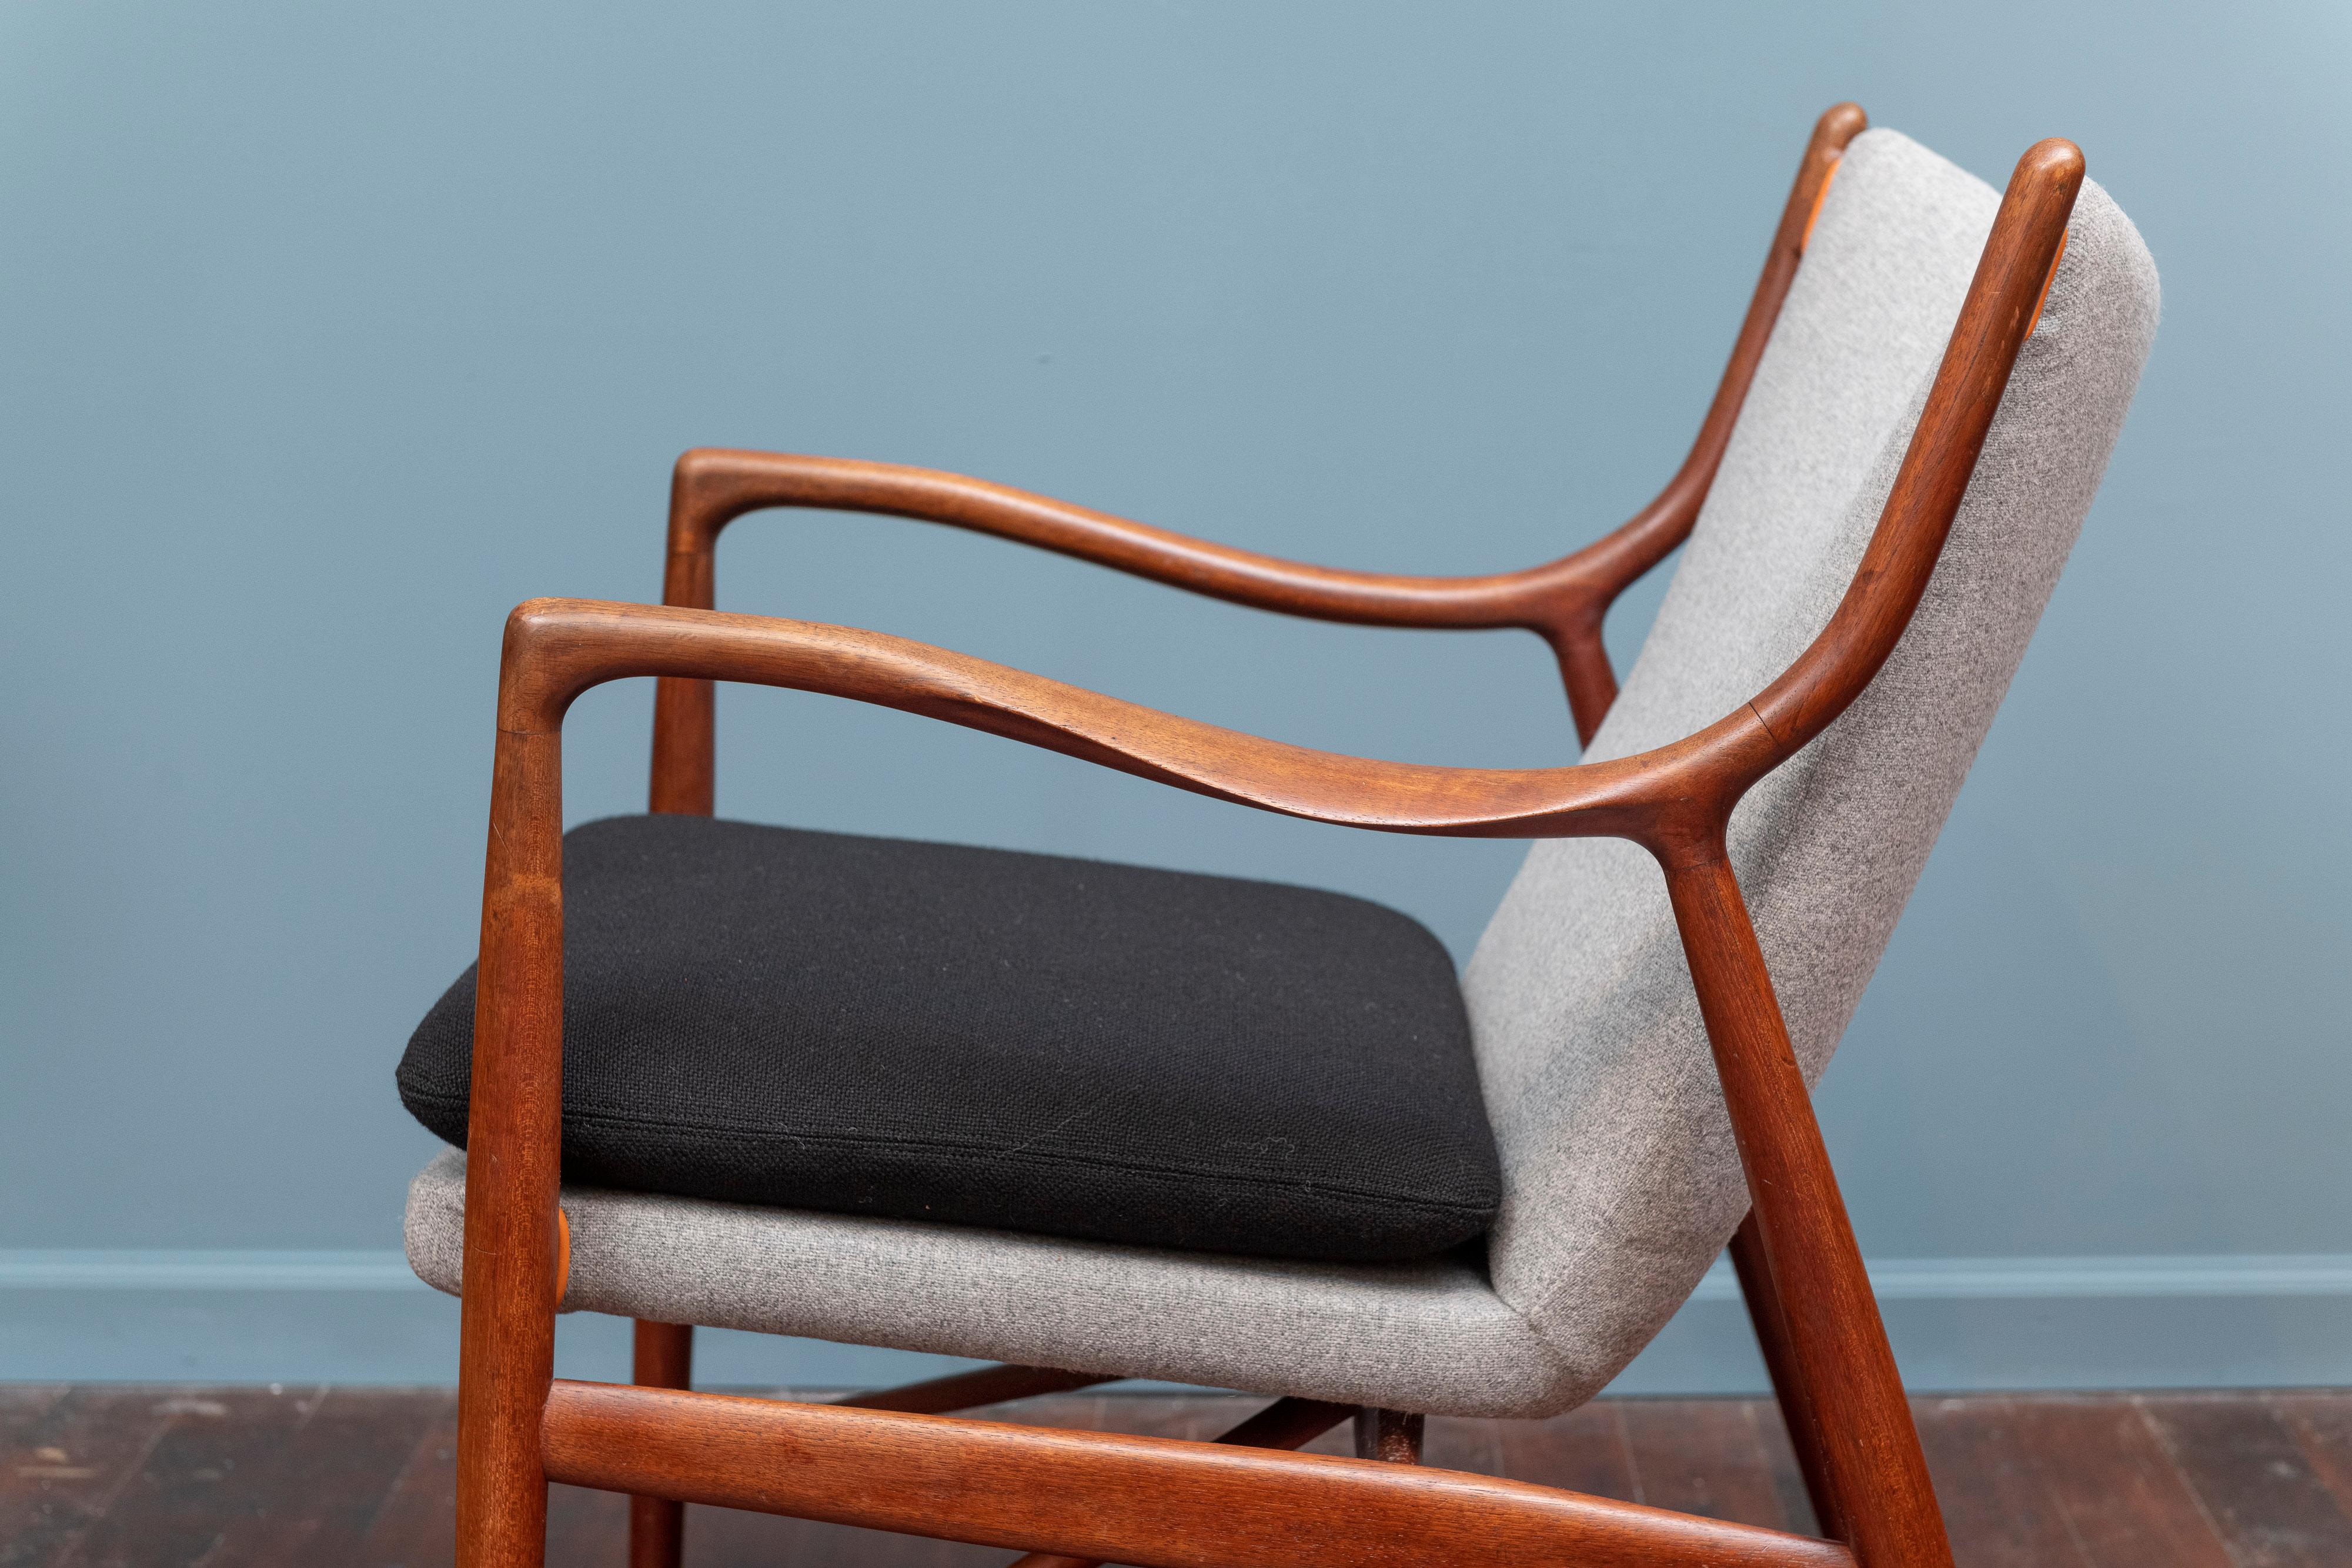 Upholstery Finn Juhl NV 45 Chair by Niels Vodder